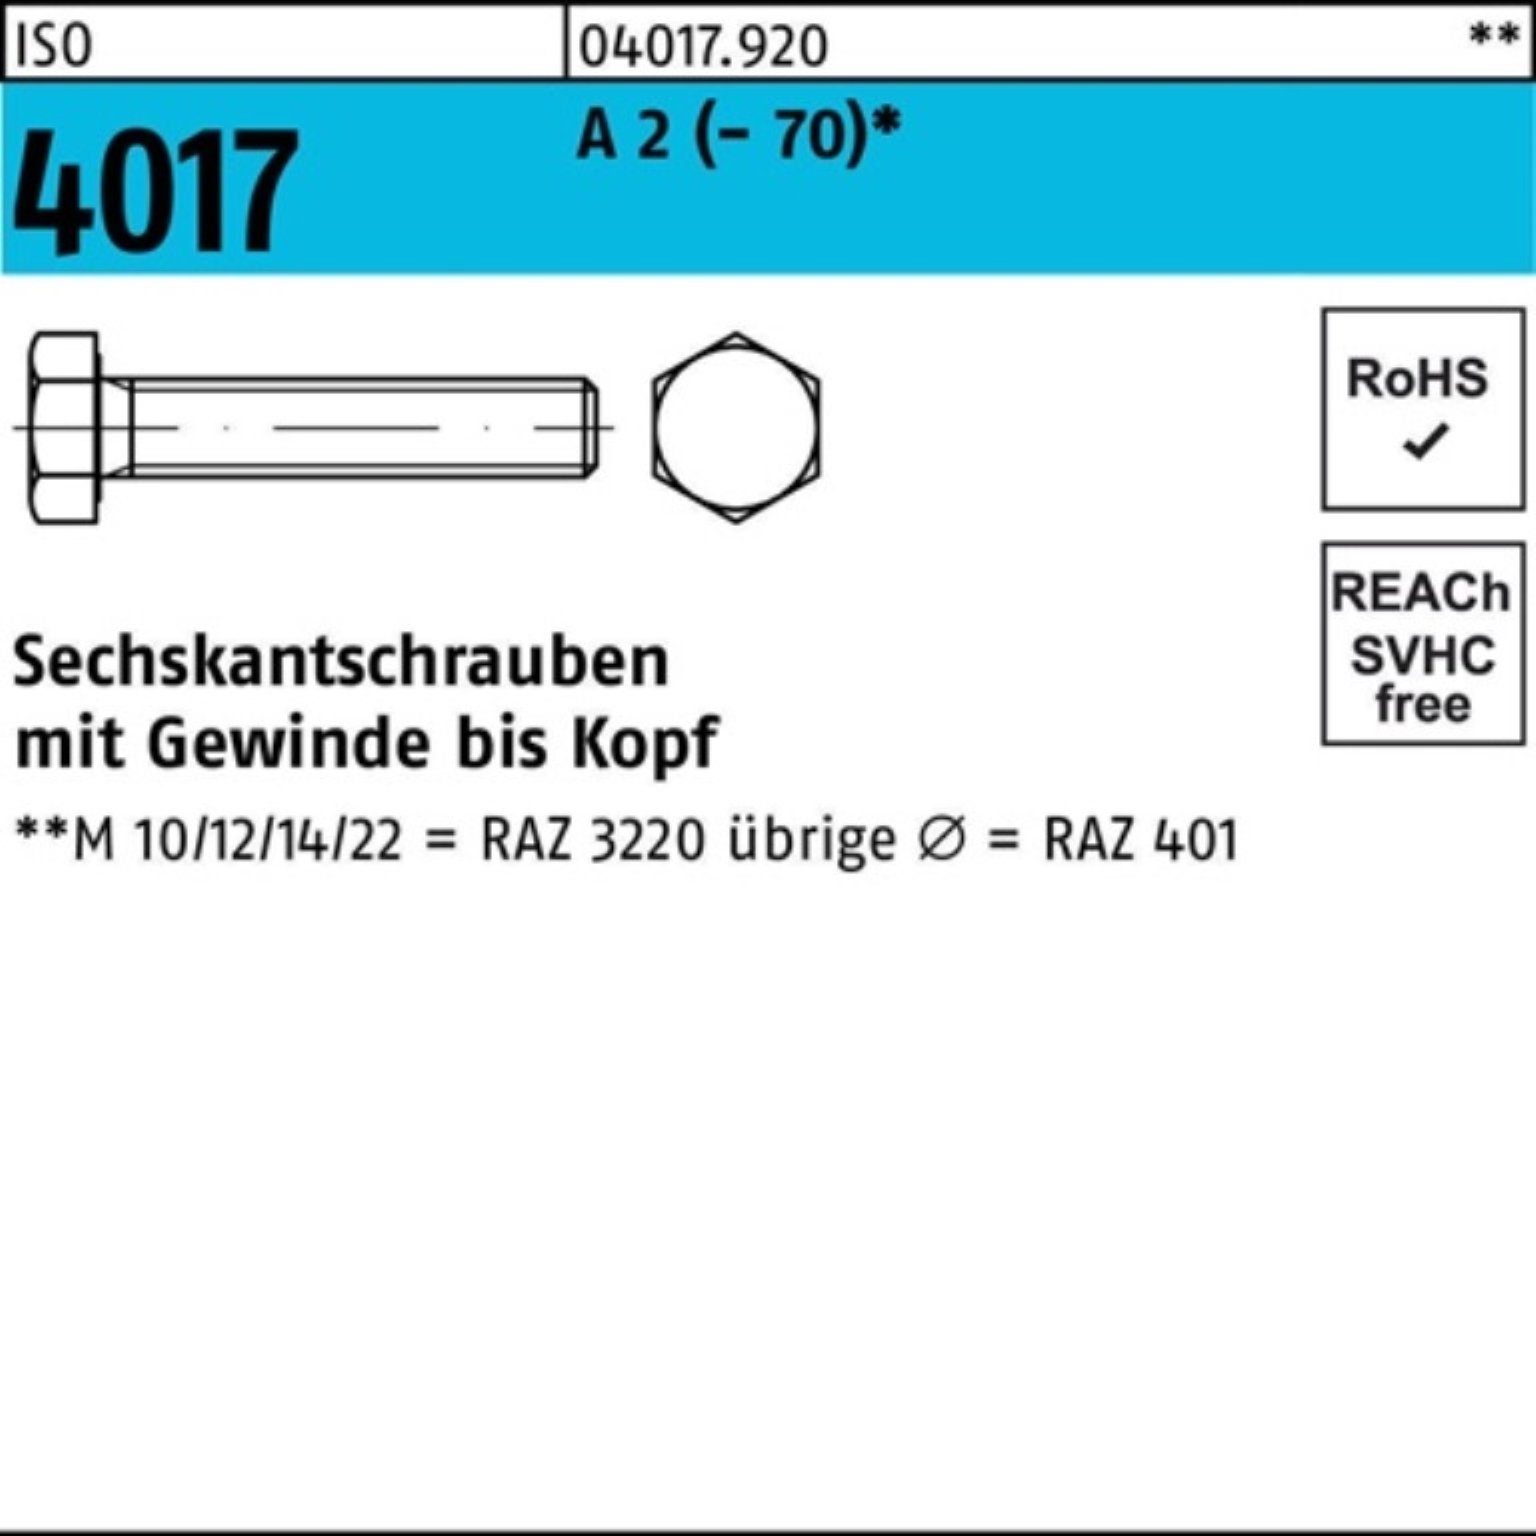 Bufab Sechskantschraube 100er Pack Sechskantschraube ISO 4017 VG M6x 30 A 2 (70) 100 Stück